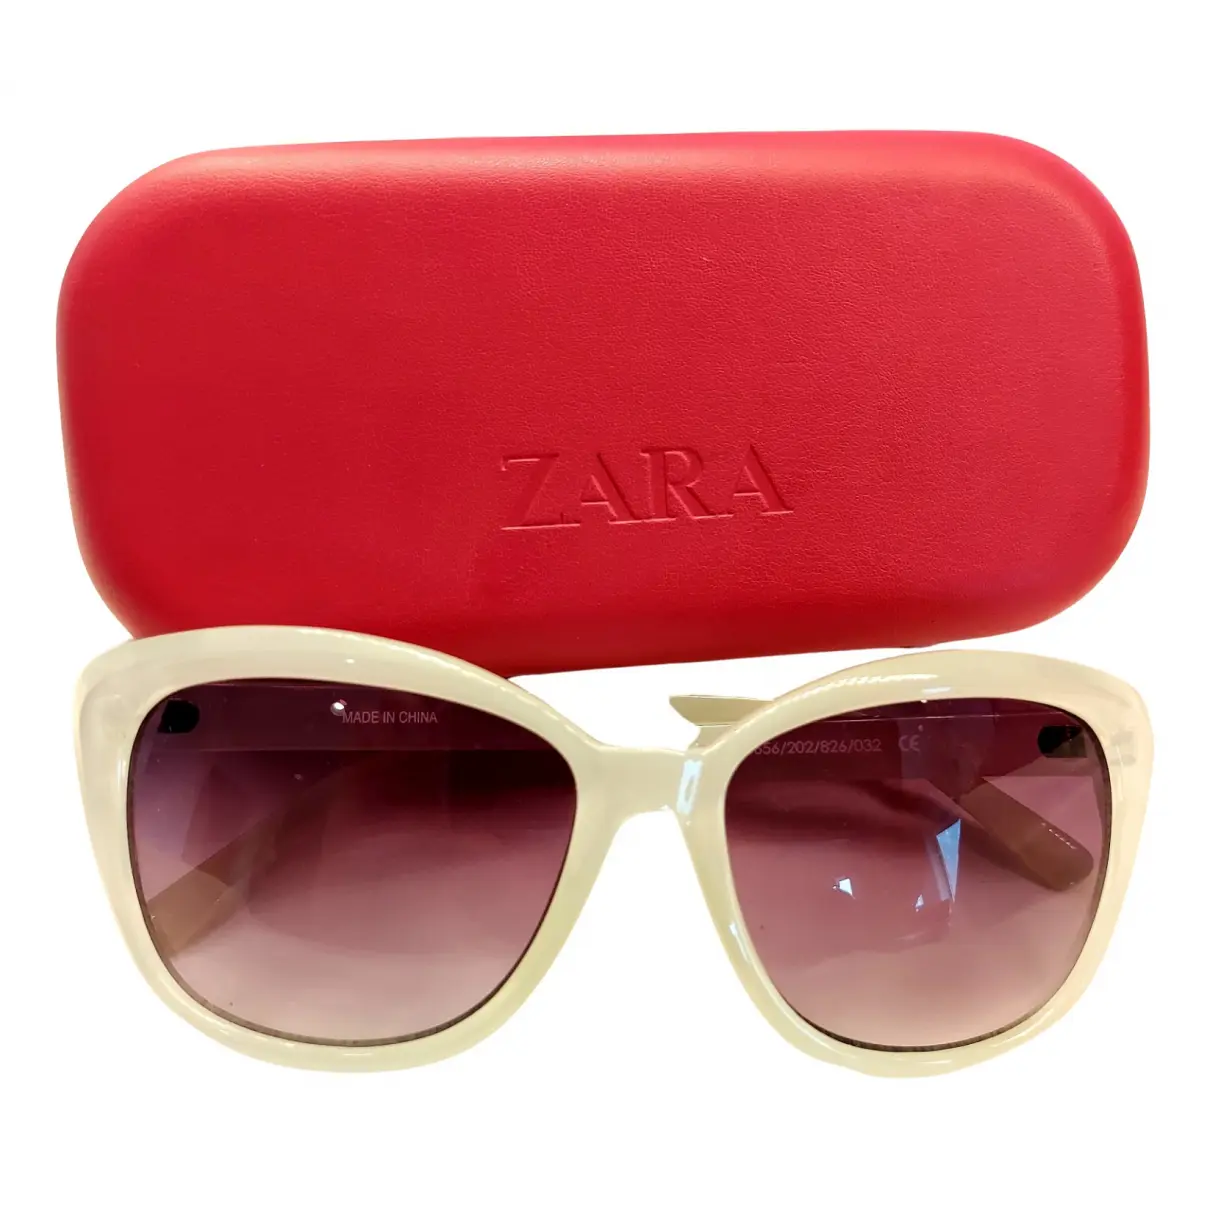 Oversized sunglasses Zara